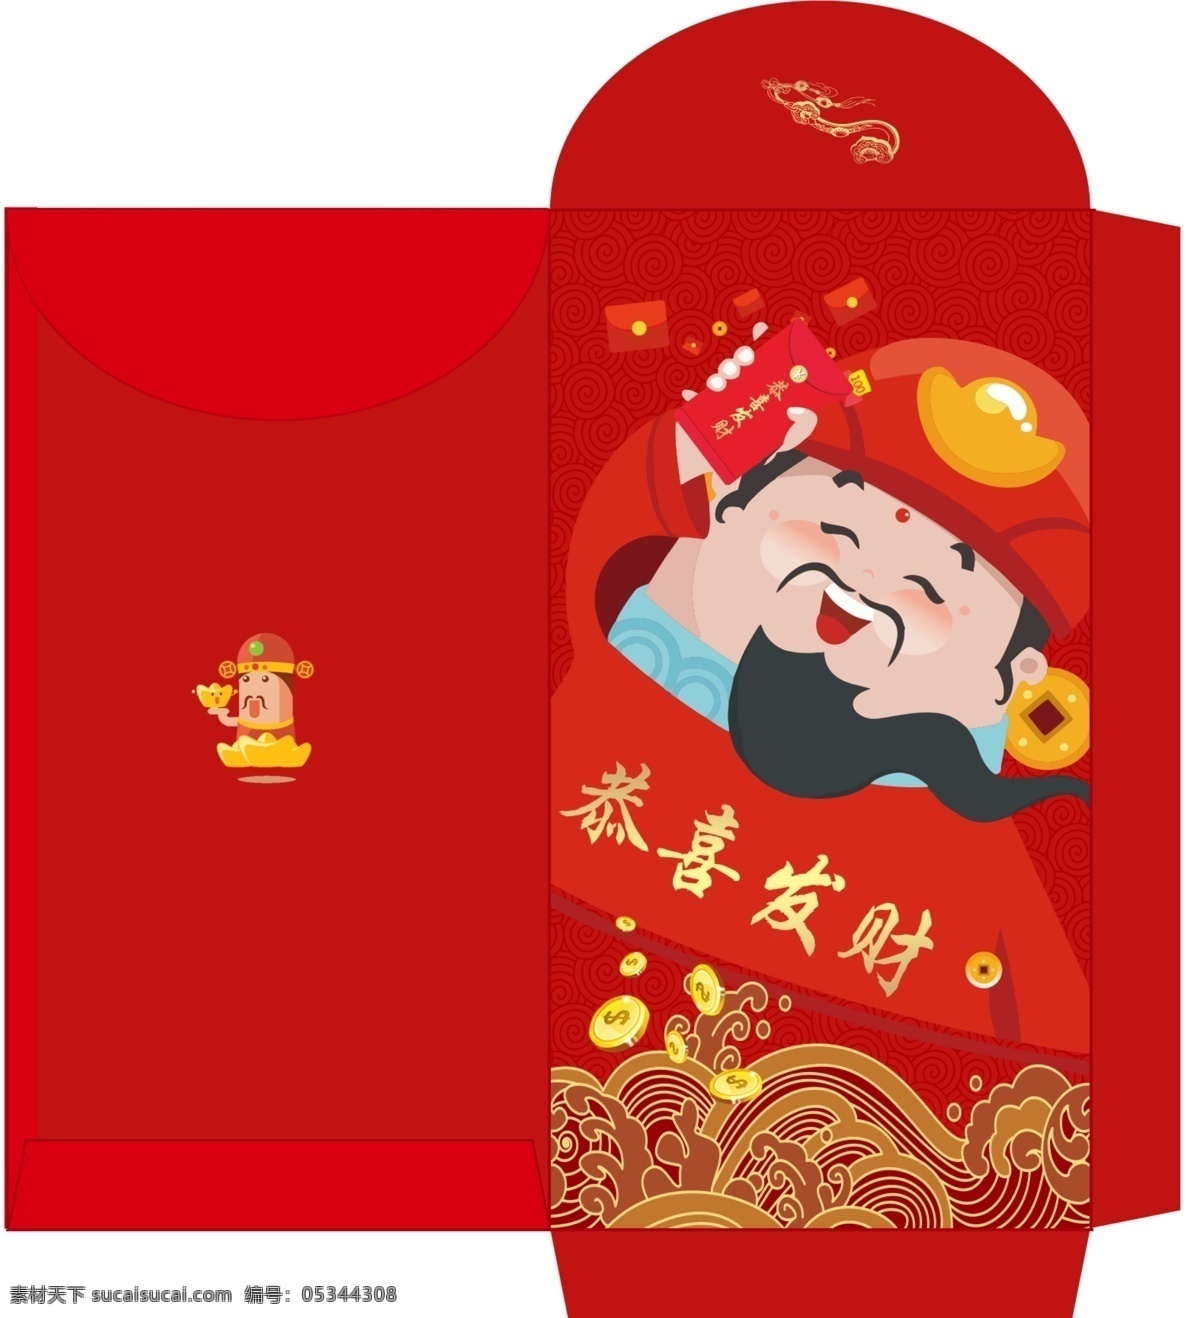 原创新年红包 红色财神红包 利是封 原创 婚礼 红包 红色中国风 结婚 送礼 包装设计 新年红包 节日 设计图 双囍红包设计